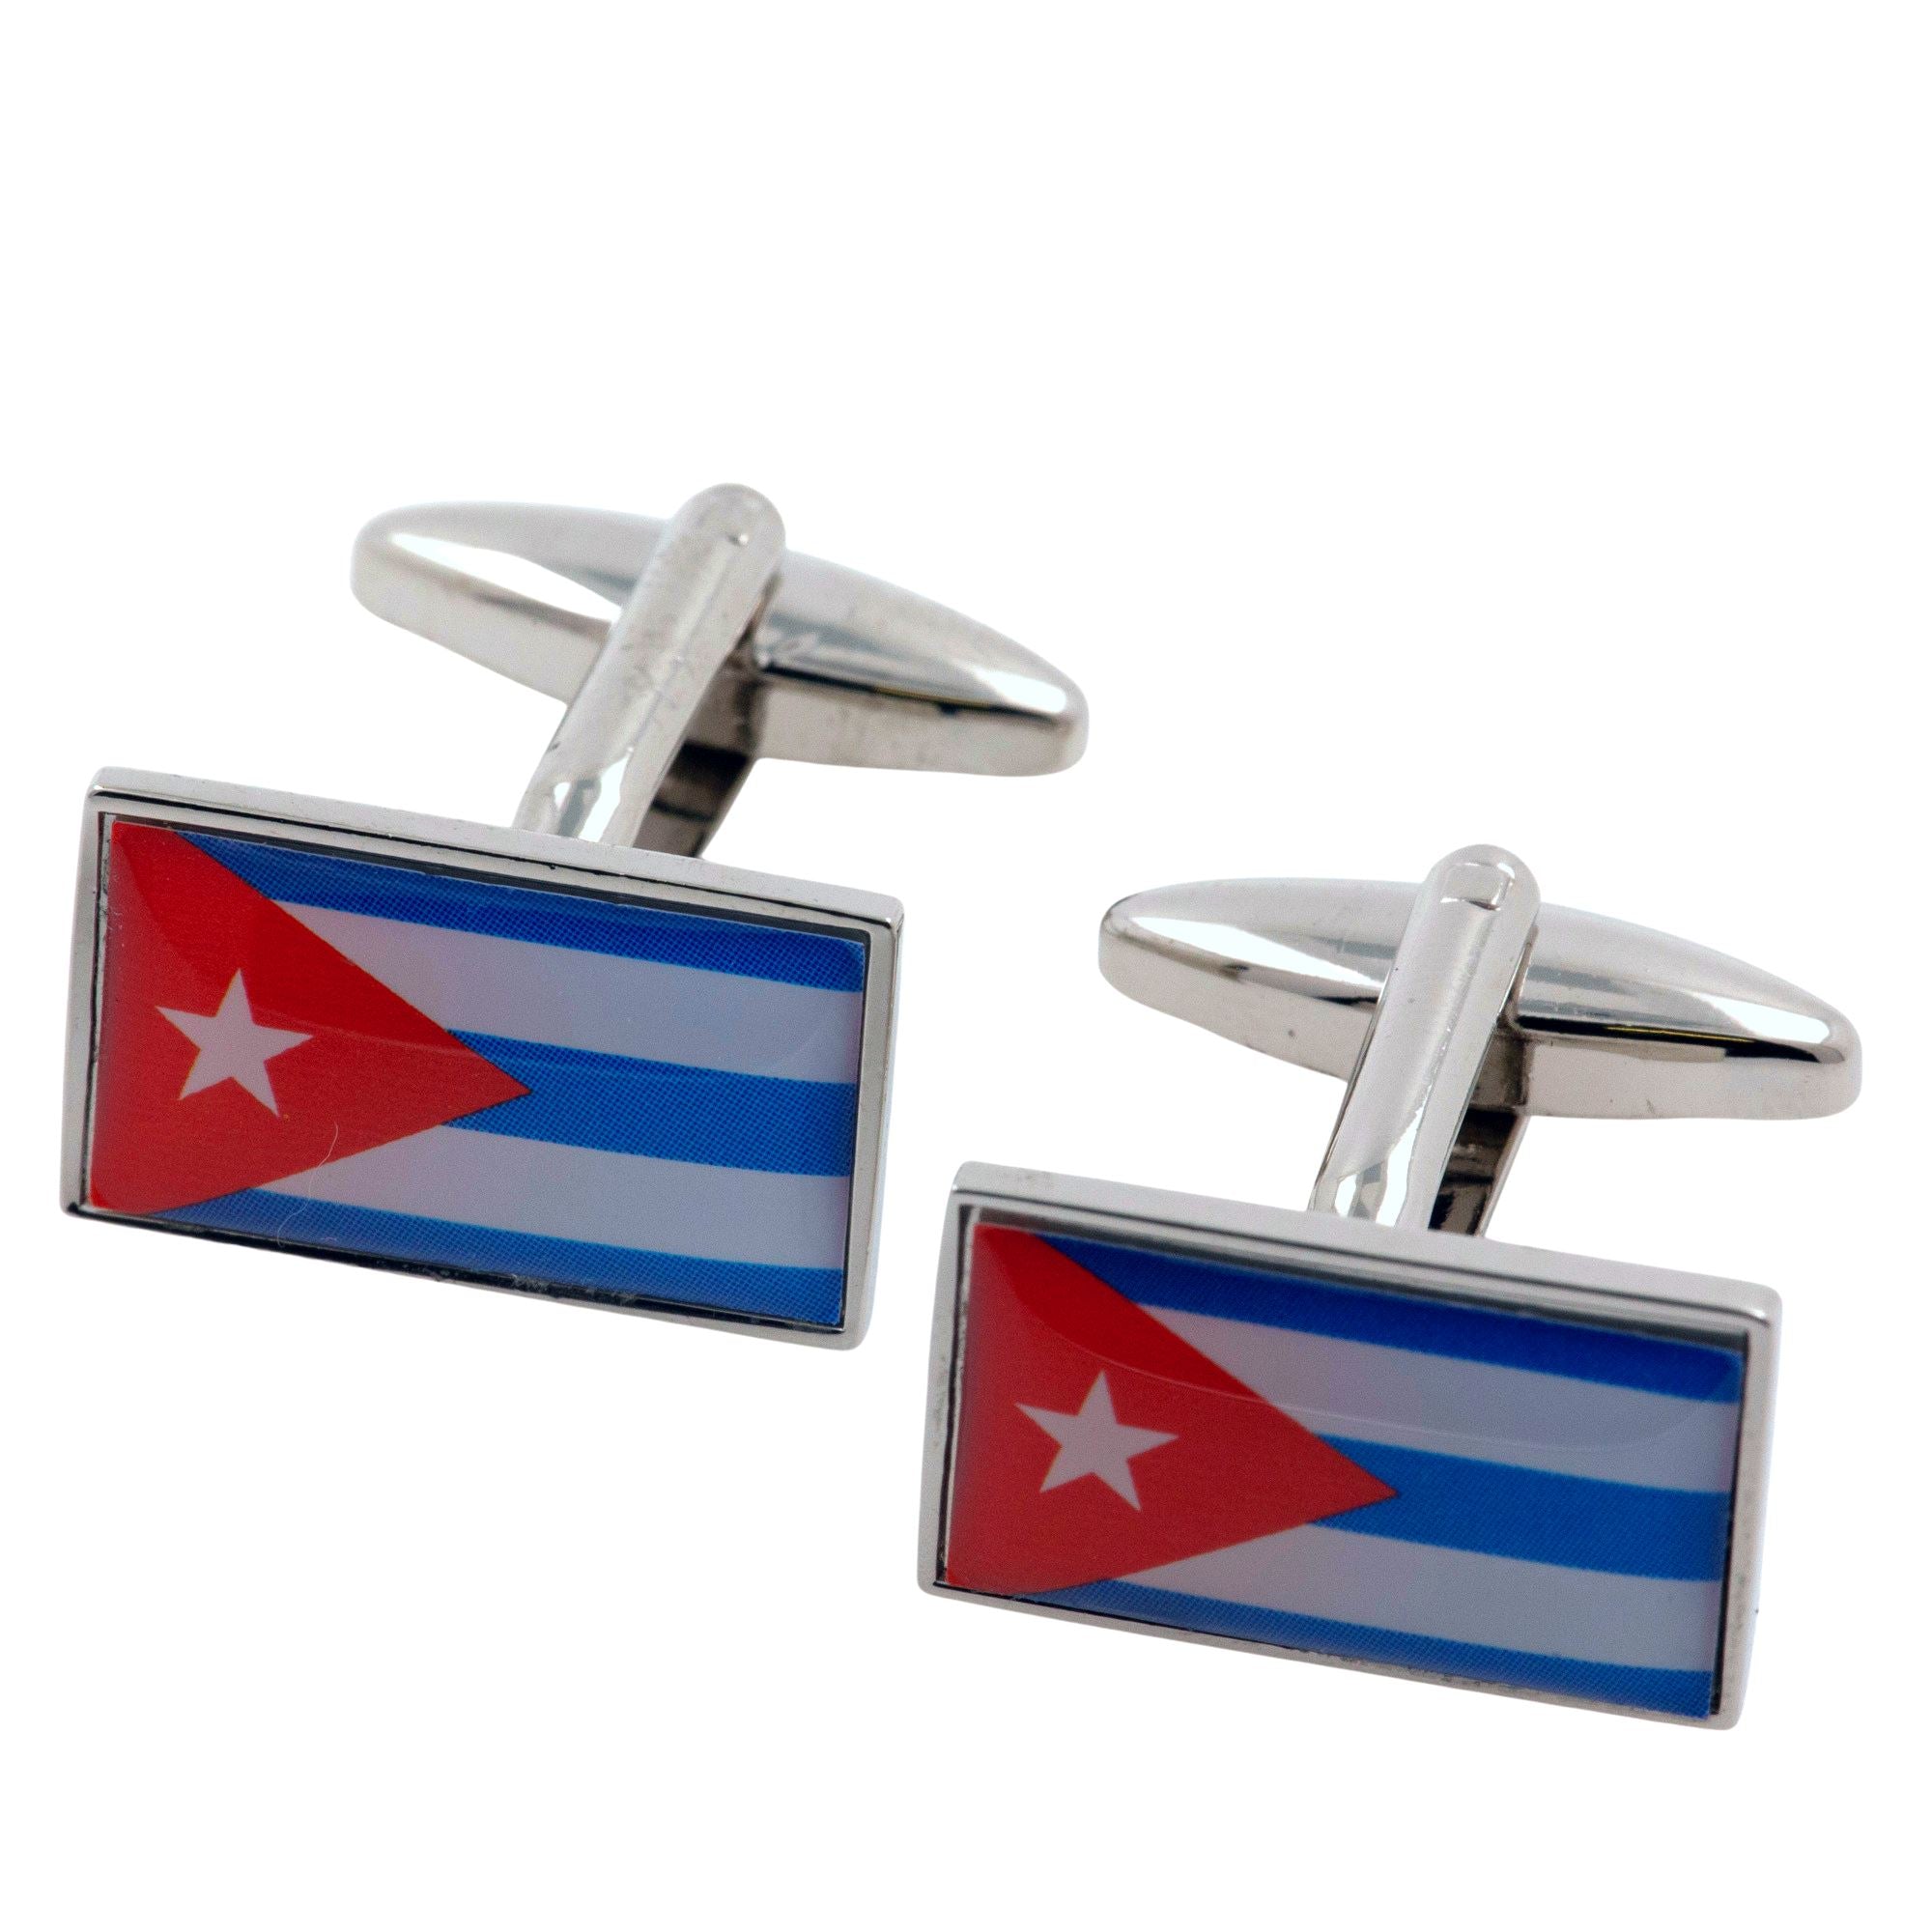 Flag of Cuba Cufflinks Novelty Cufflinks Clinks 